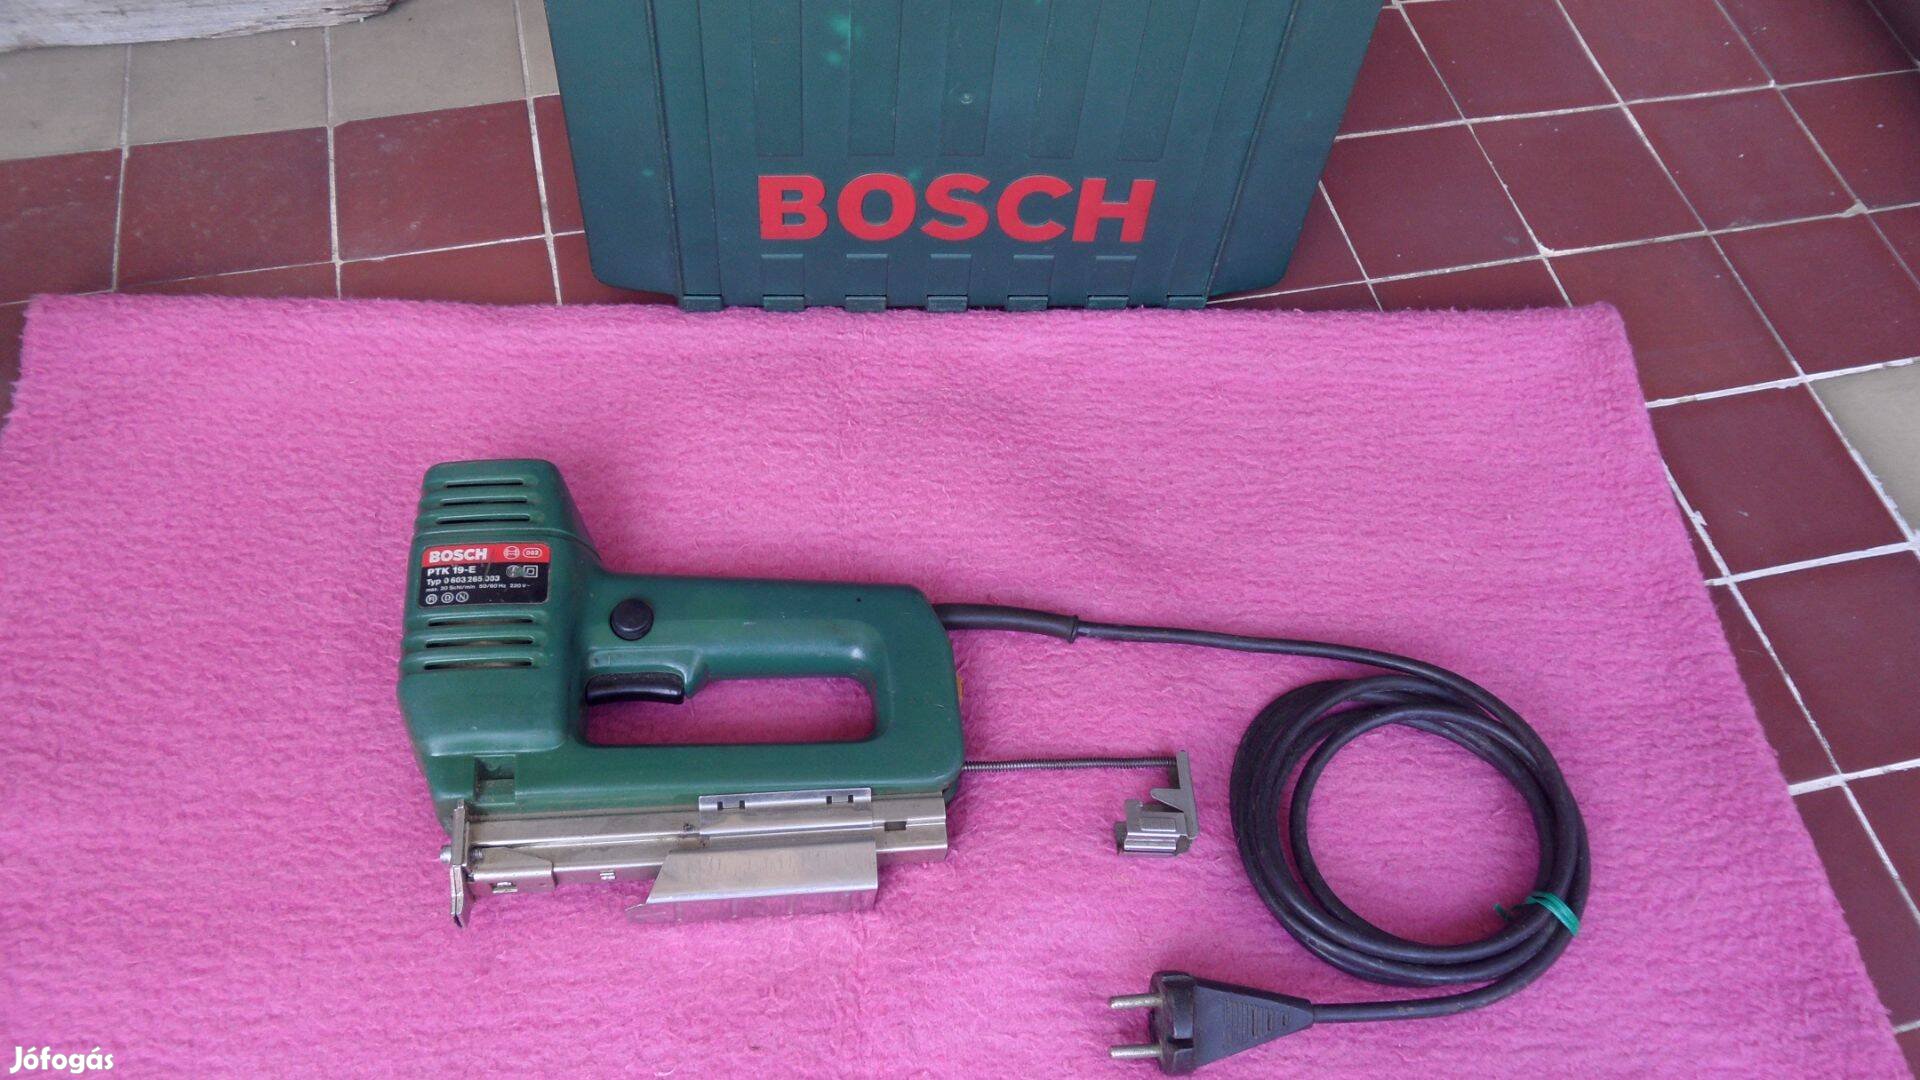 Bosch kézi tűzőgép & szögbelövő PTK 19 E kapcsozó gép 240 V